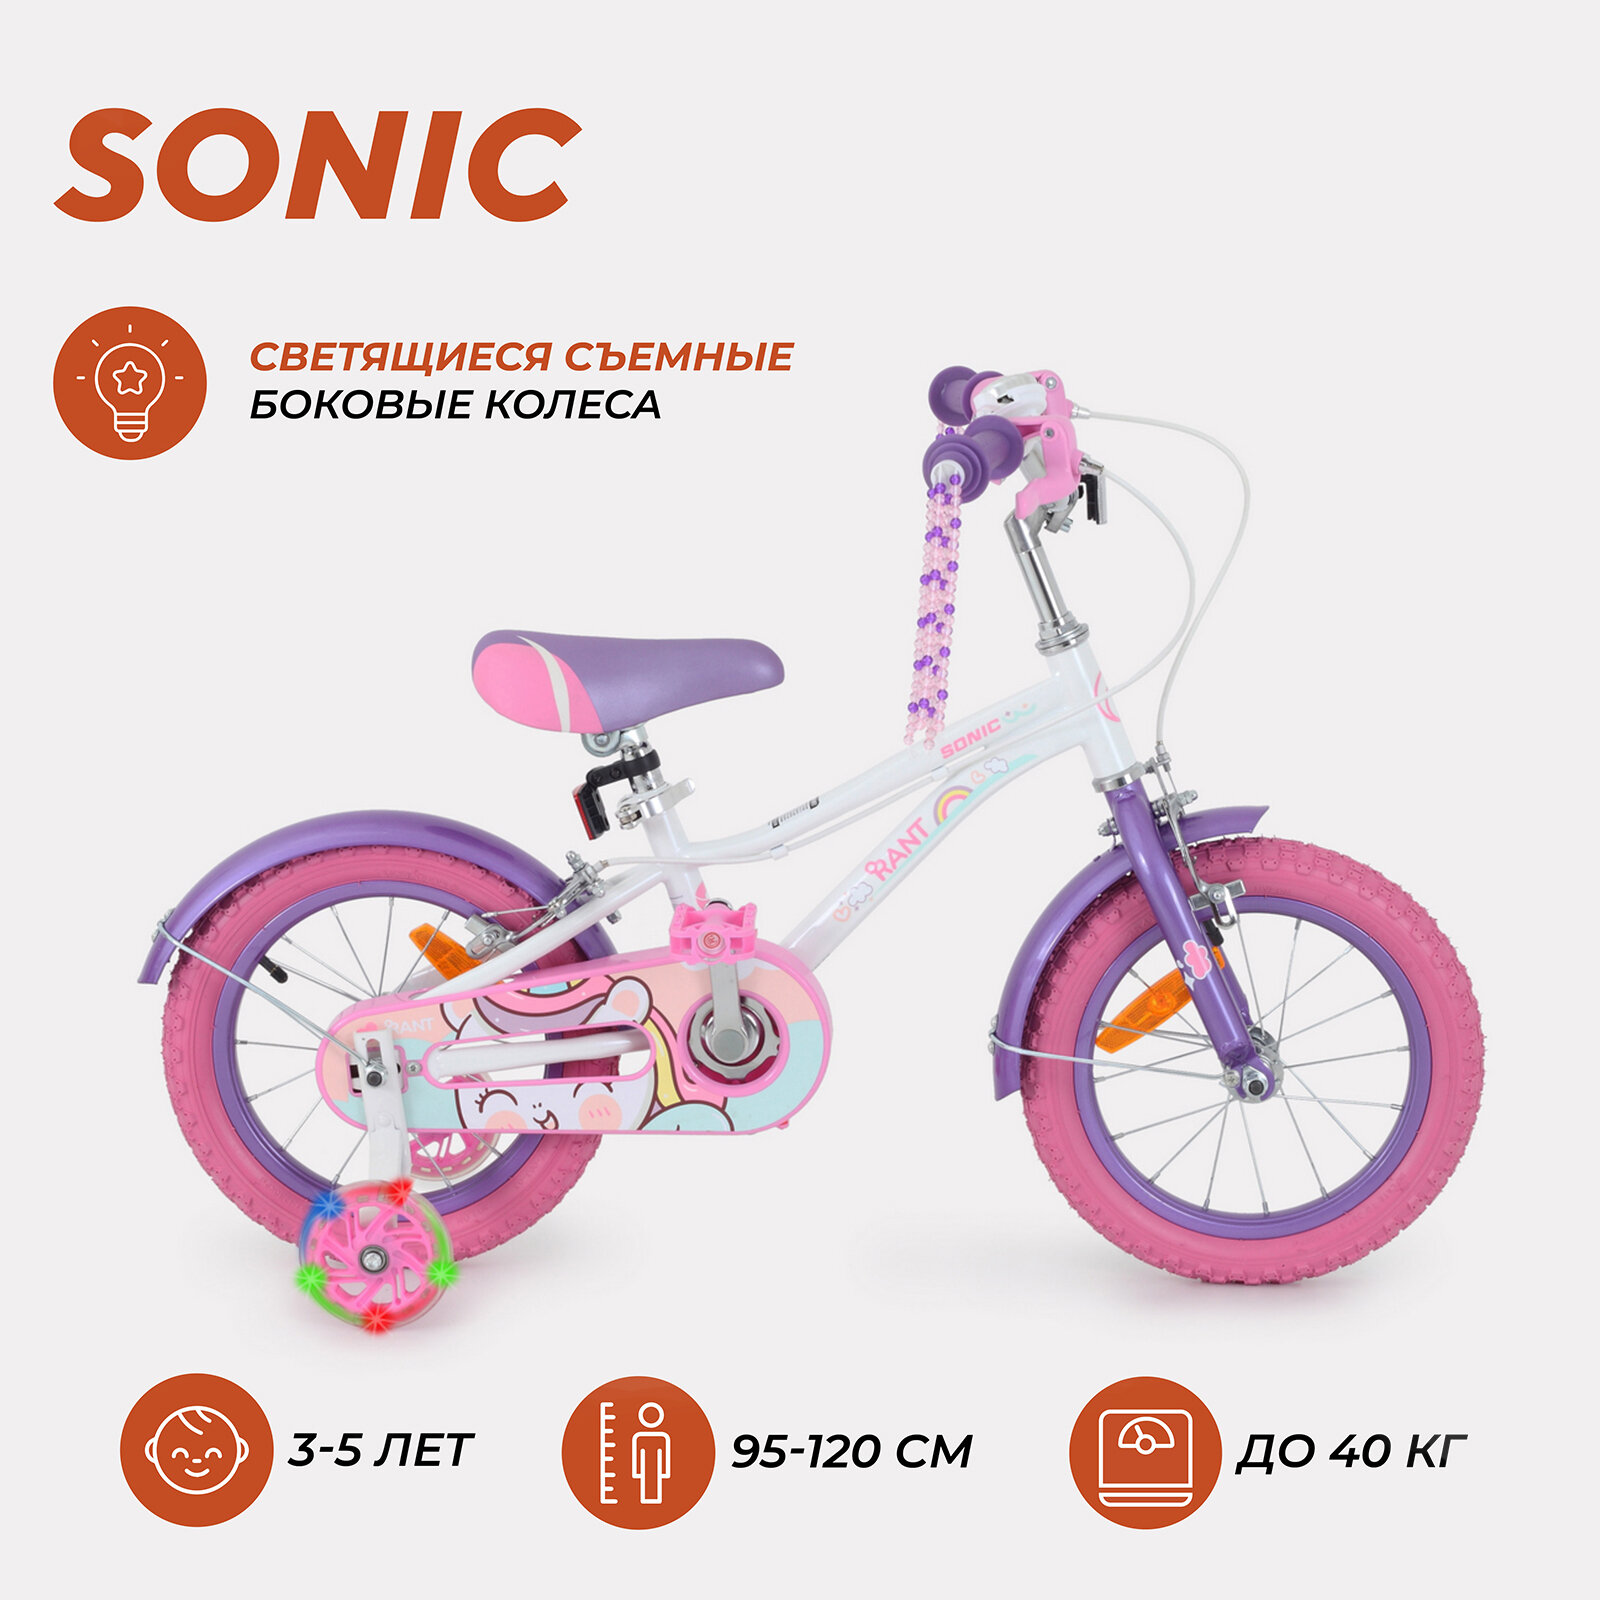 Велосипед двухколесный детский RANT "Sonic" белый